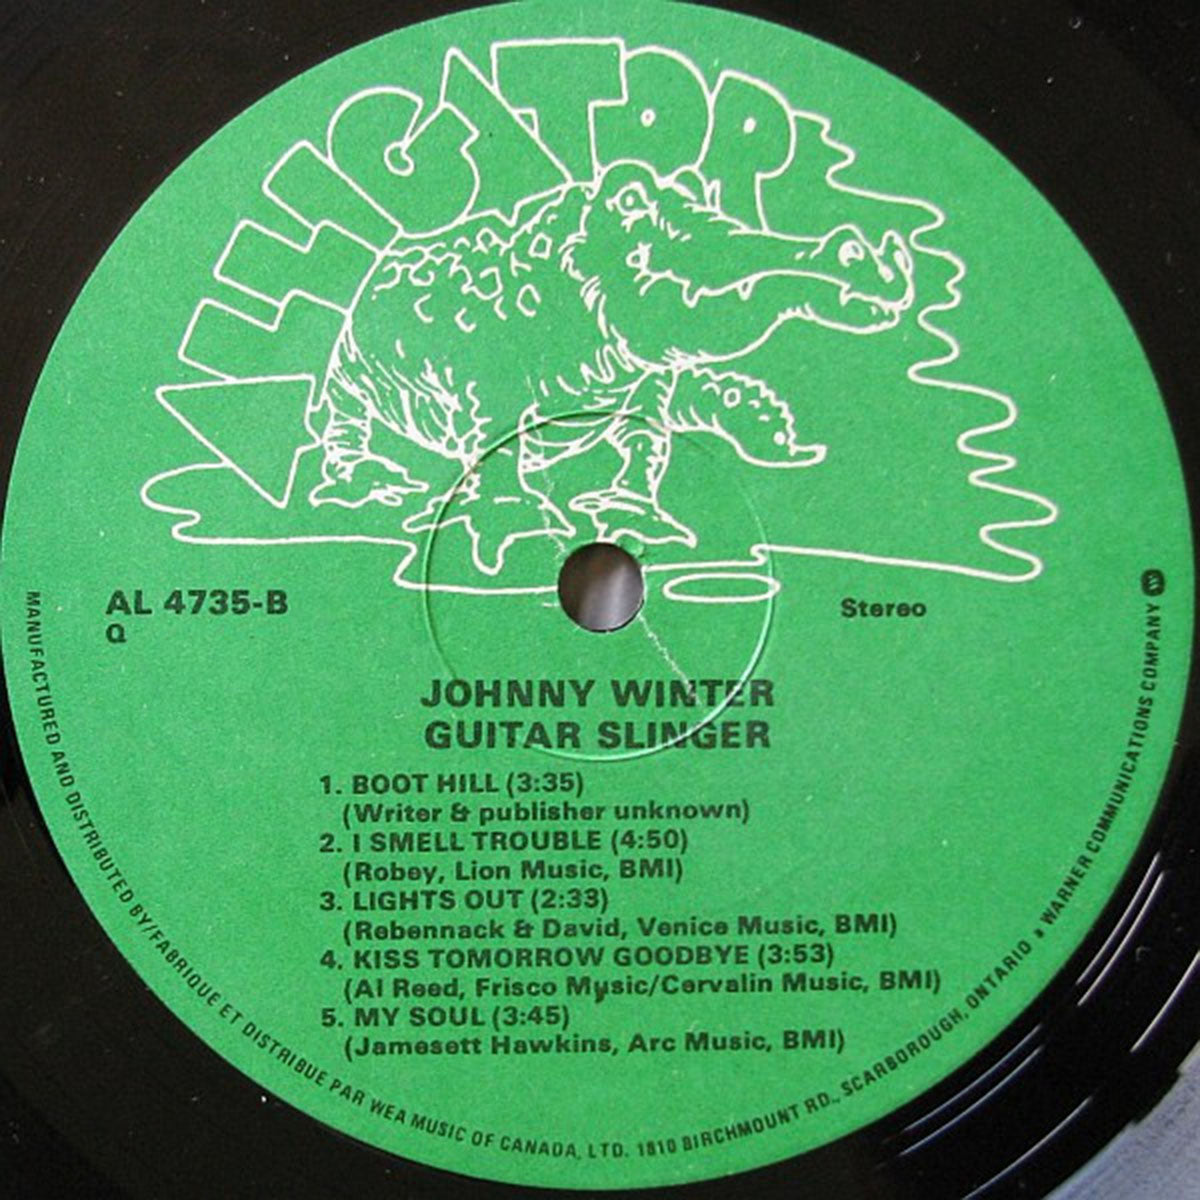 Johnny Winter – Guitar Slinger - 1984!